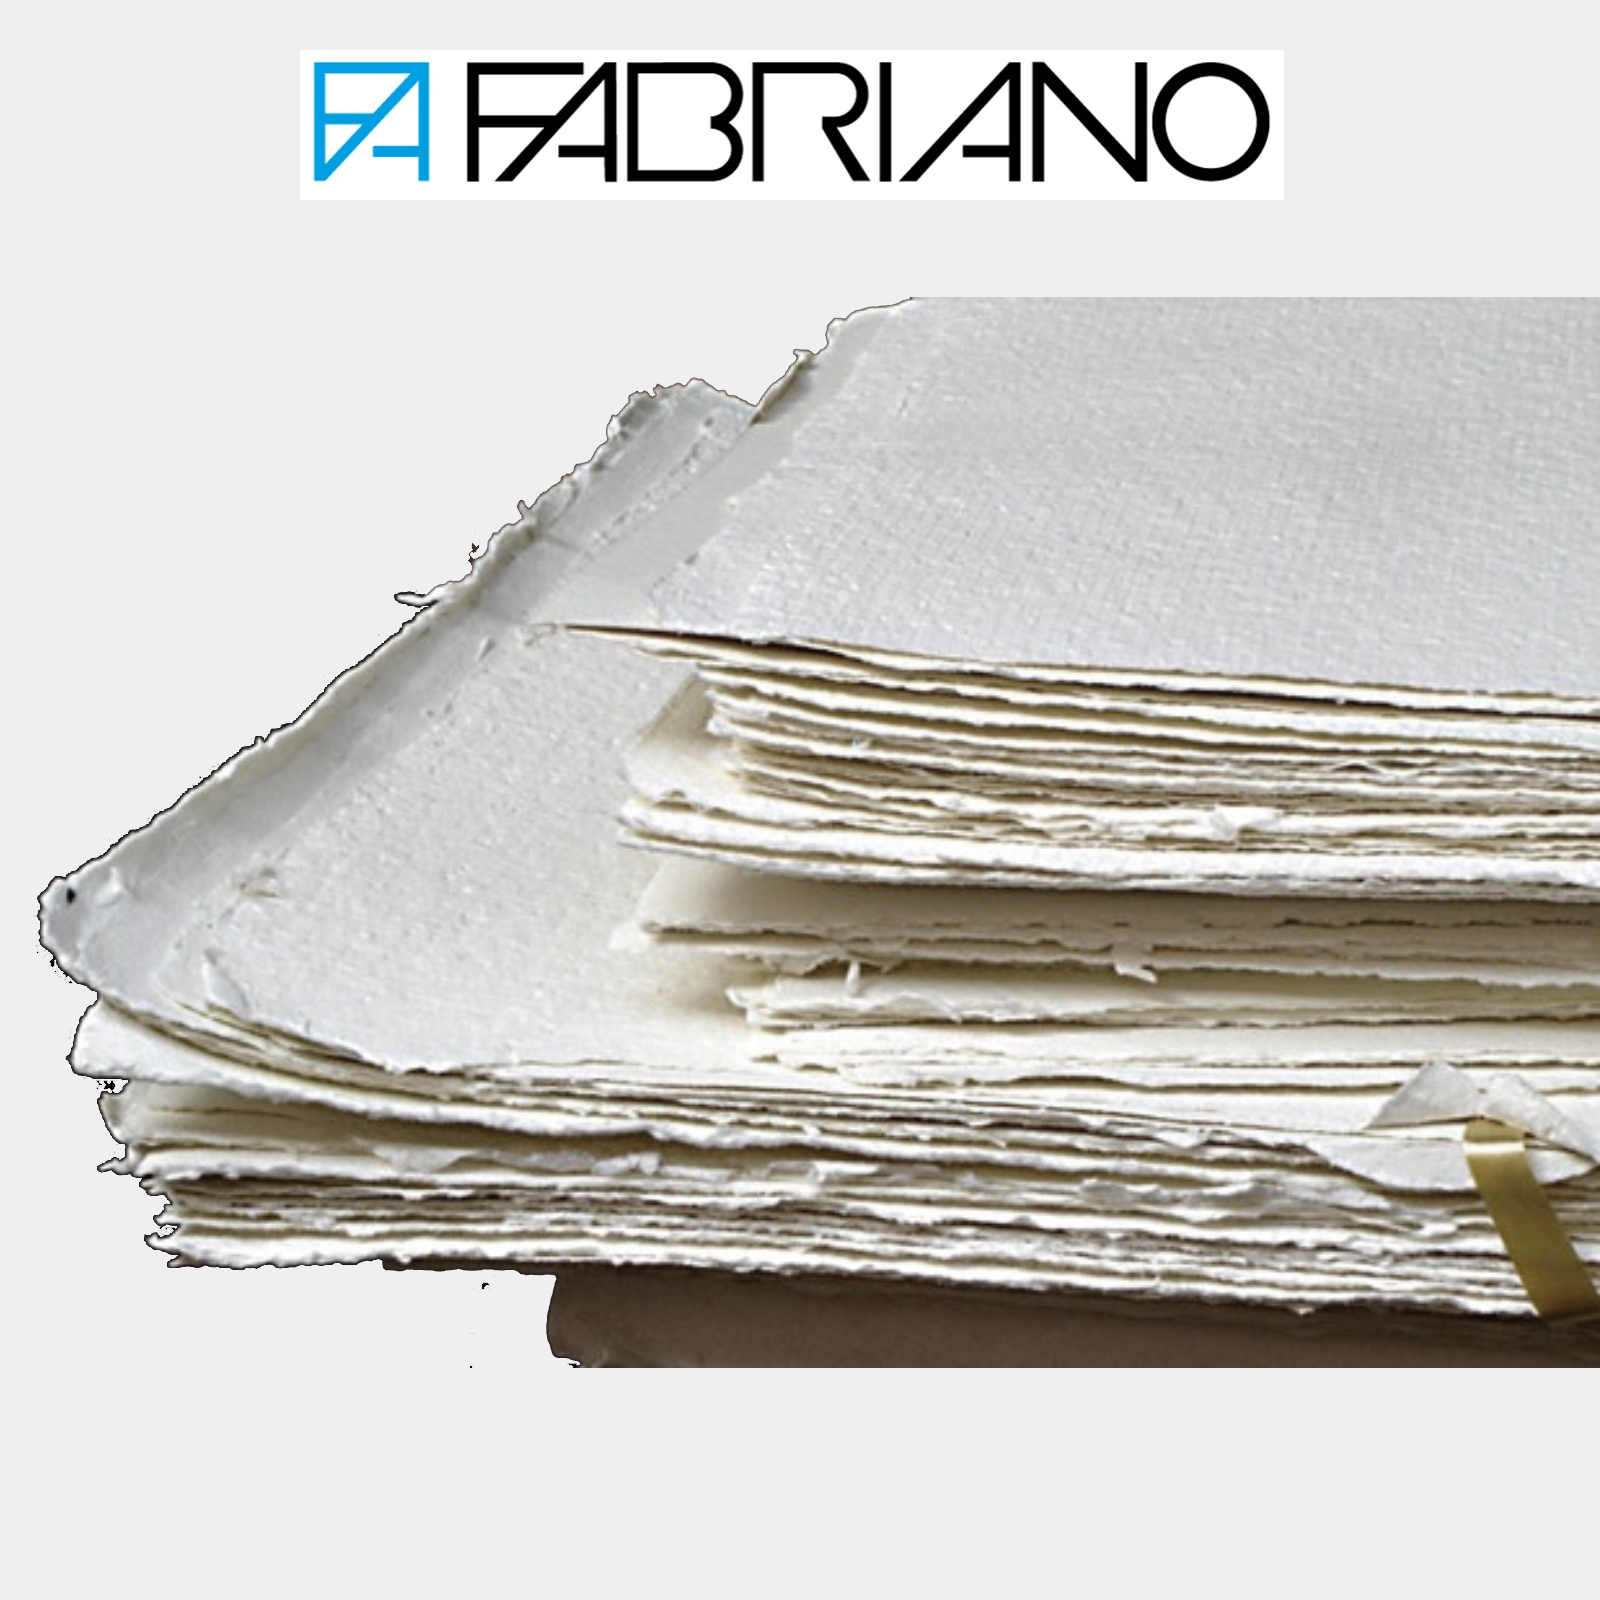 Carta Fabriano Artistico Extra White in fogli 56x76 cm per acquerello